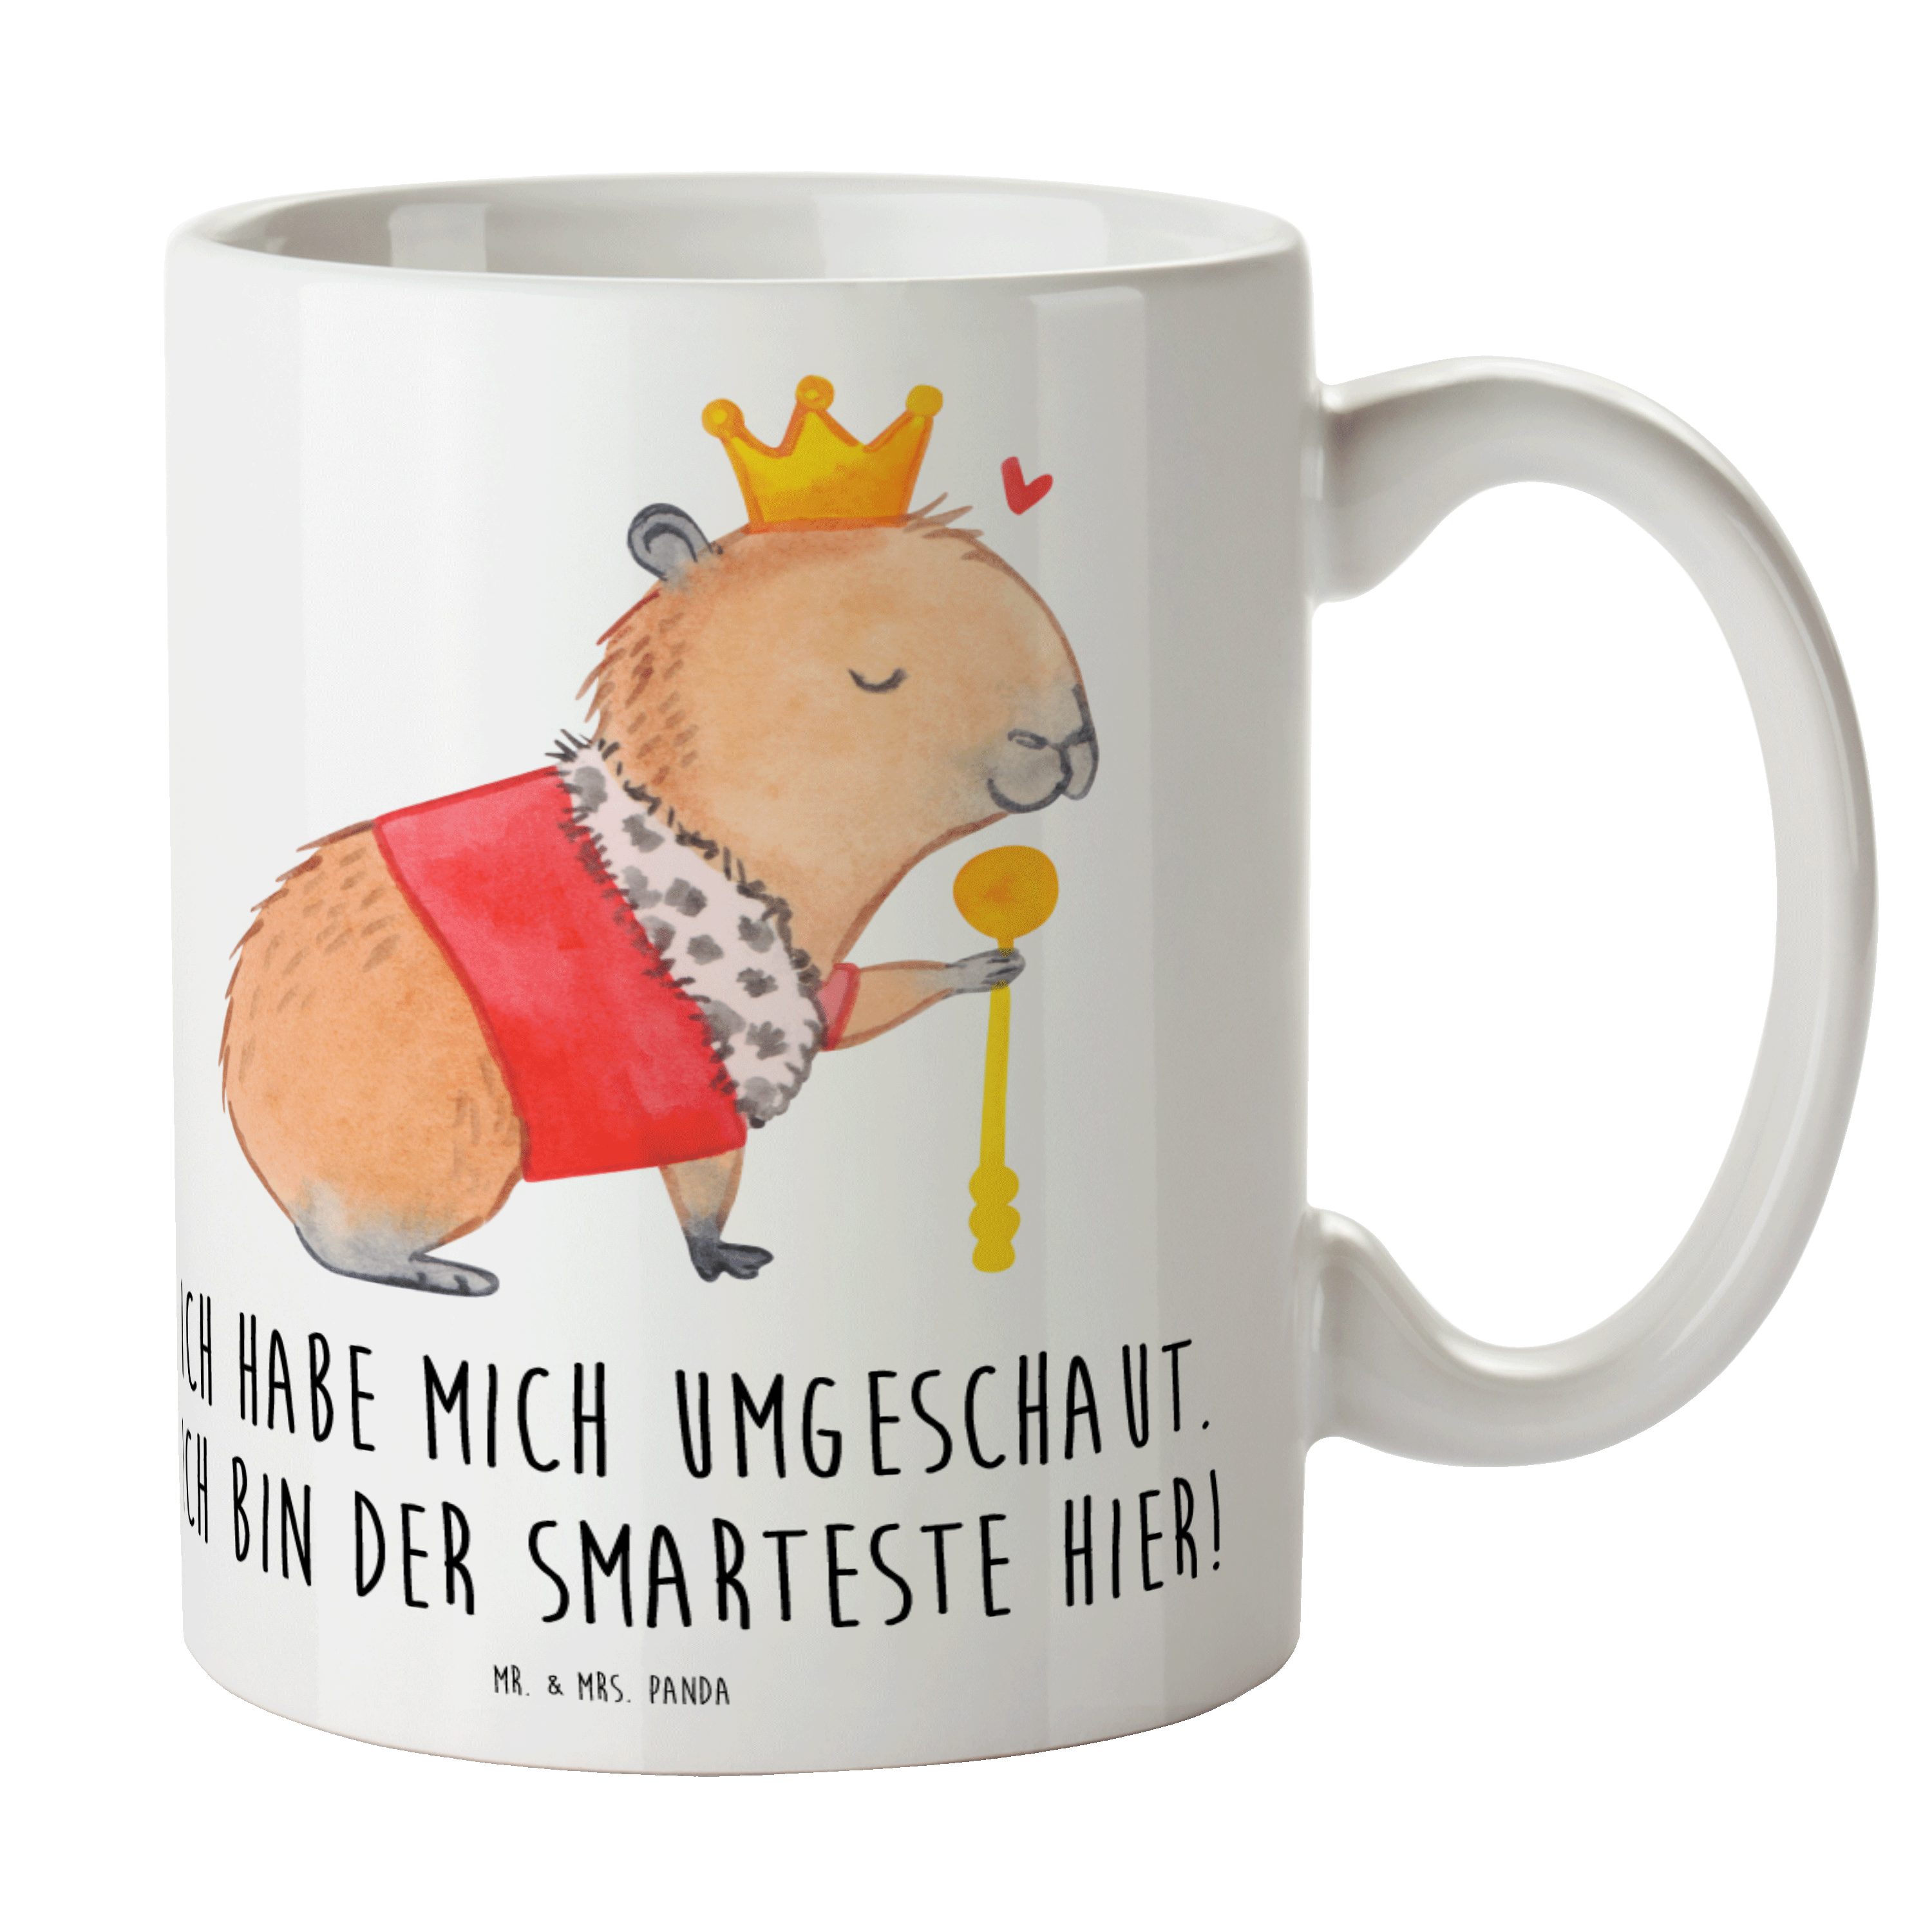 Mr. & Mrs. Panda Tasse Capybara König - Weiß - Geschenk, Teebecher, lustige Sprüche, Geschen, Keramik